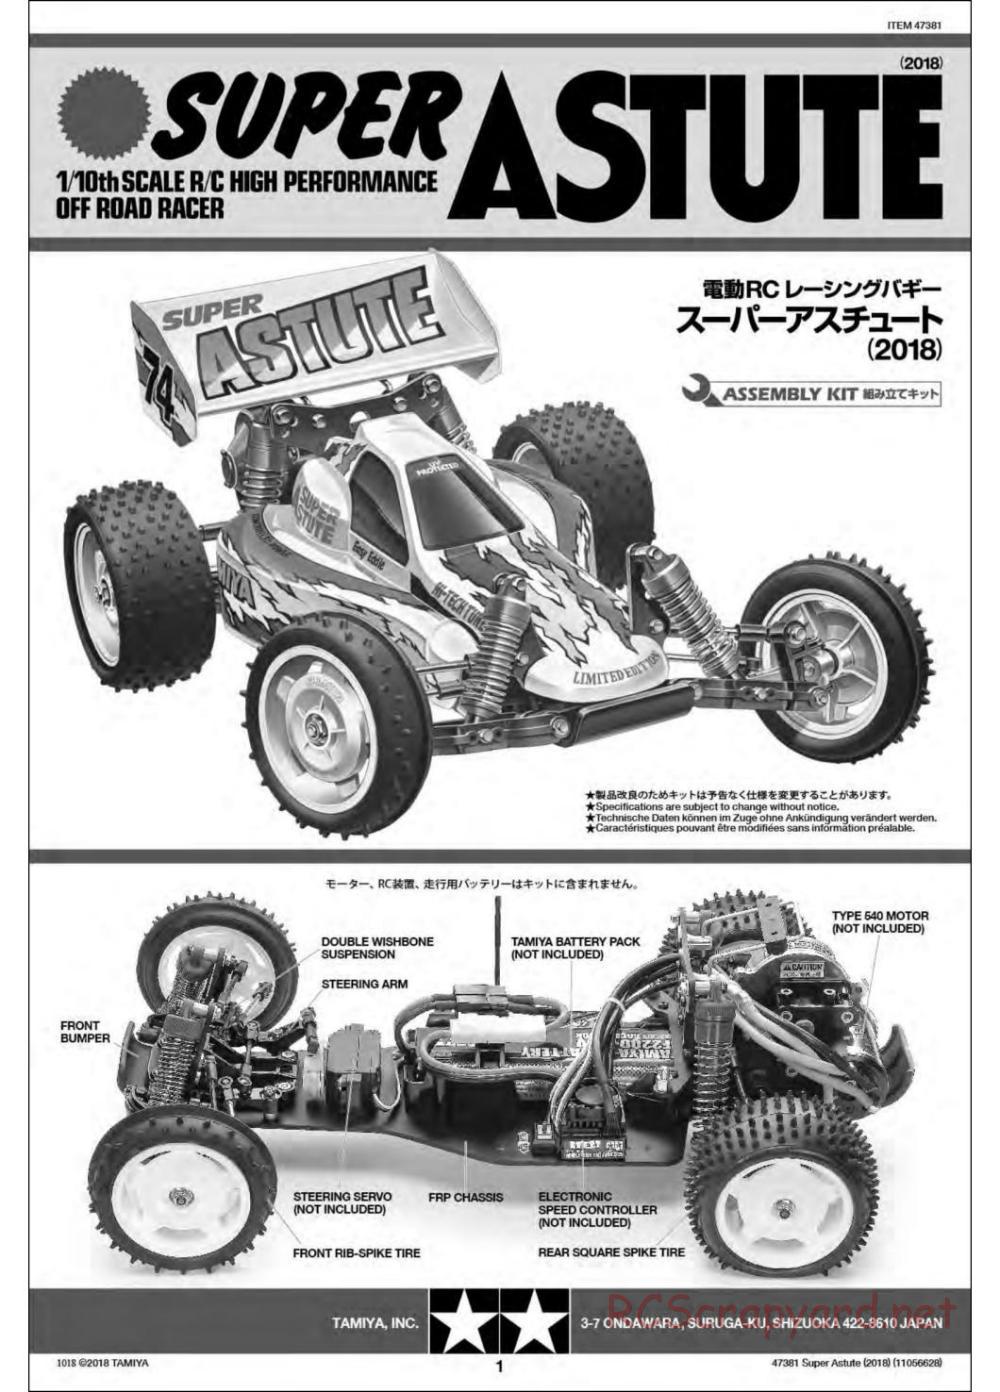 Tamiya - Super Astute (2018) Chassis - Manual - Page 1